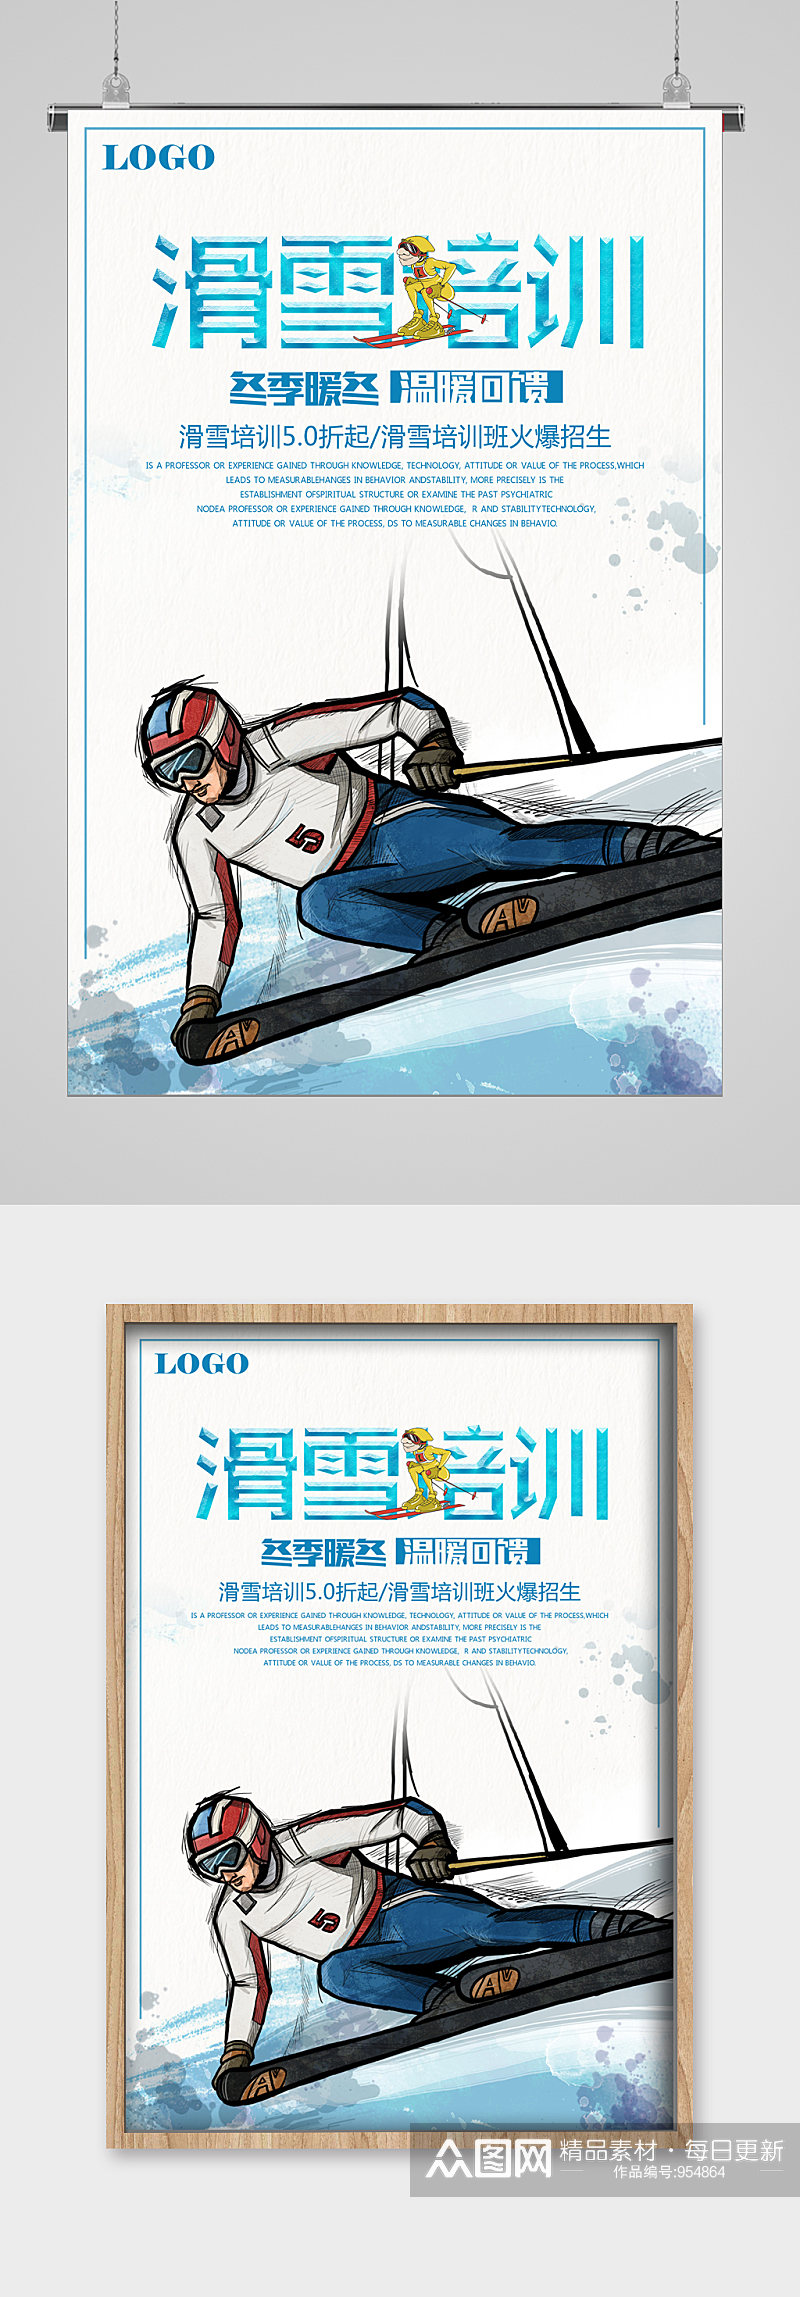 冬季滑雪安全帽宣传海报素材